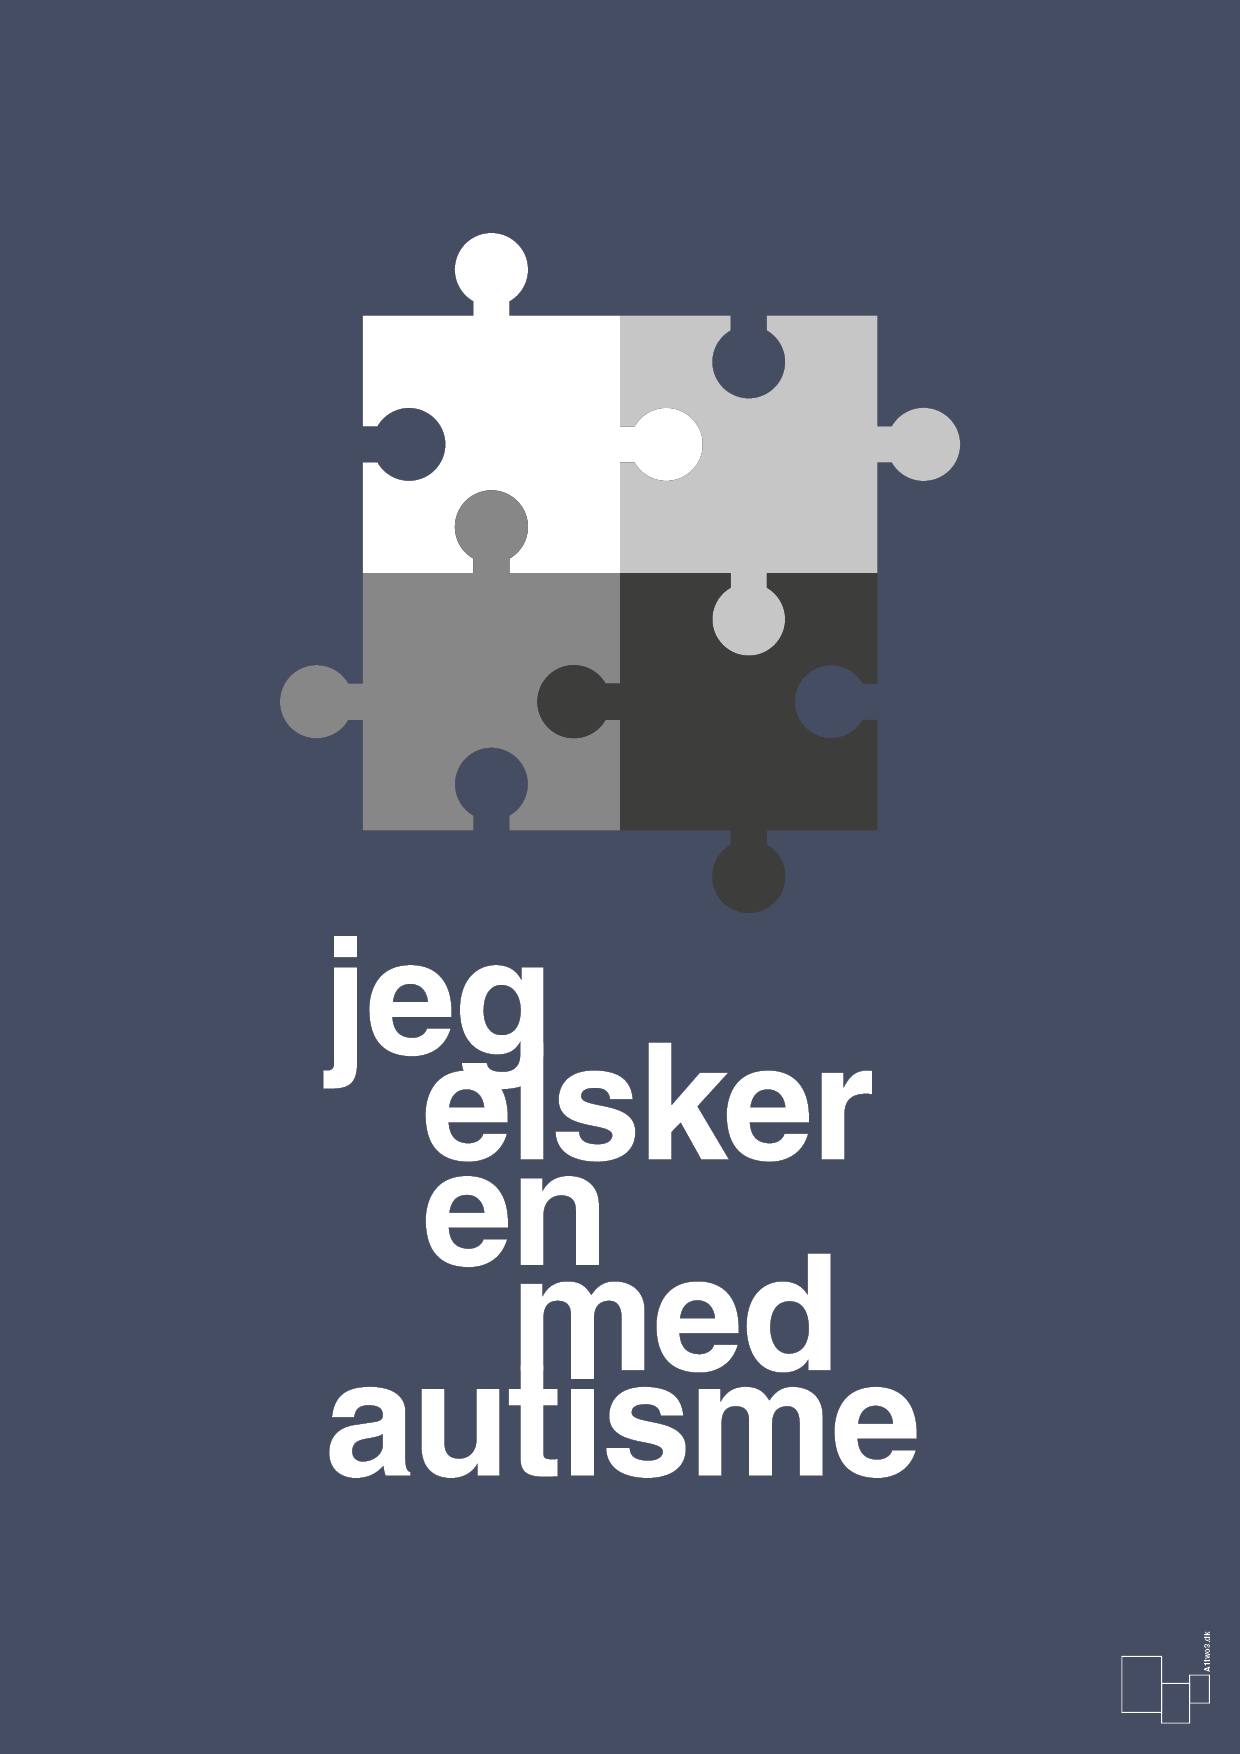 jeg elsker en med autisme - Plakat med Samfund i Petrol